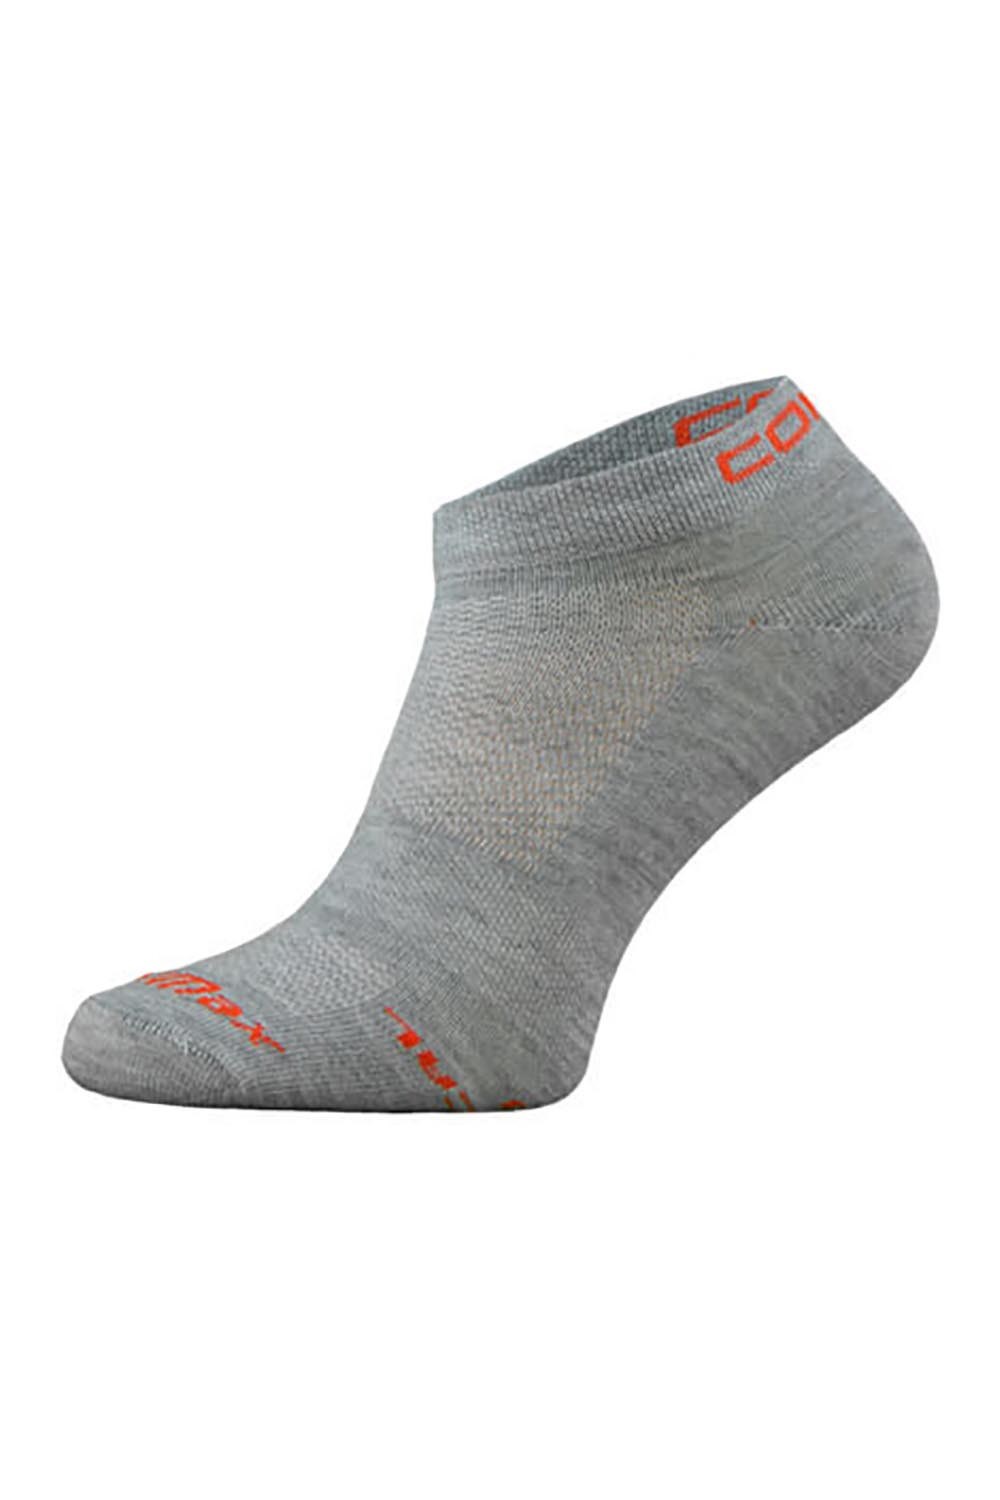 Ultra Coolmax Ankle Length Running Socks -